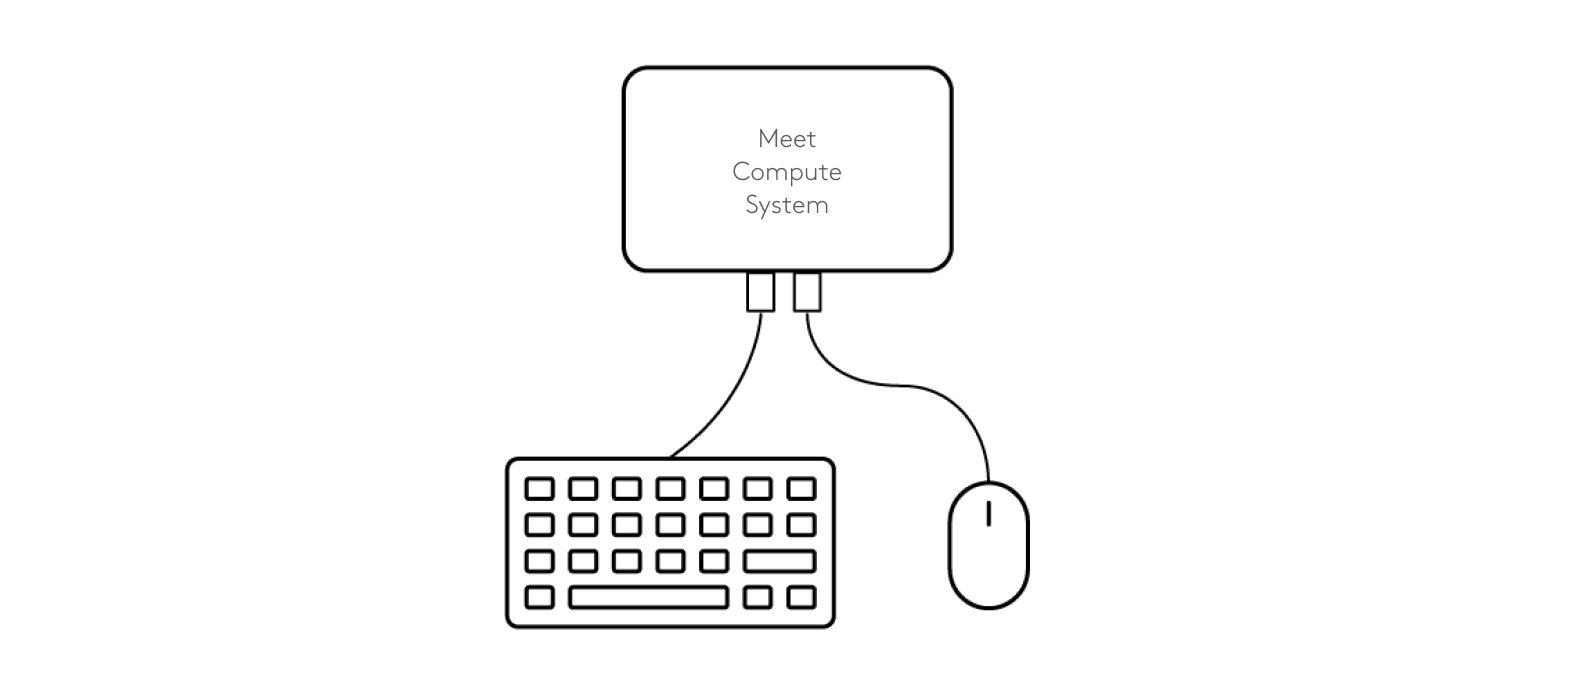 Sơ đồ kết nối bàn phím và chuột với Hệ thống máy tính Meet